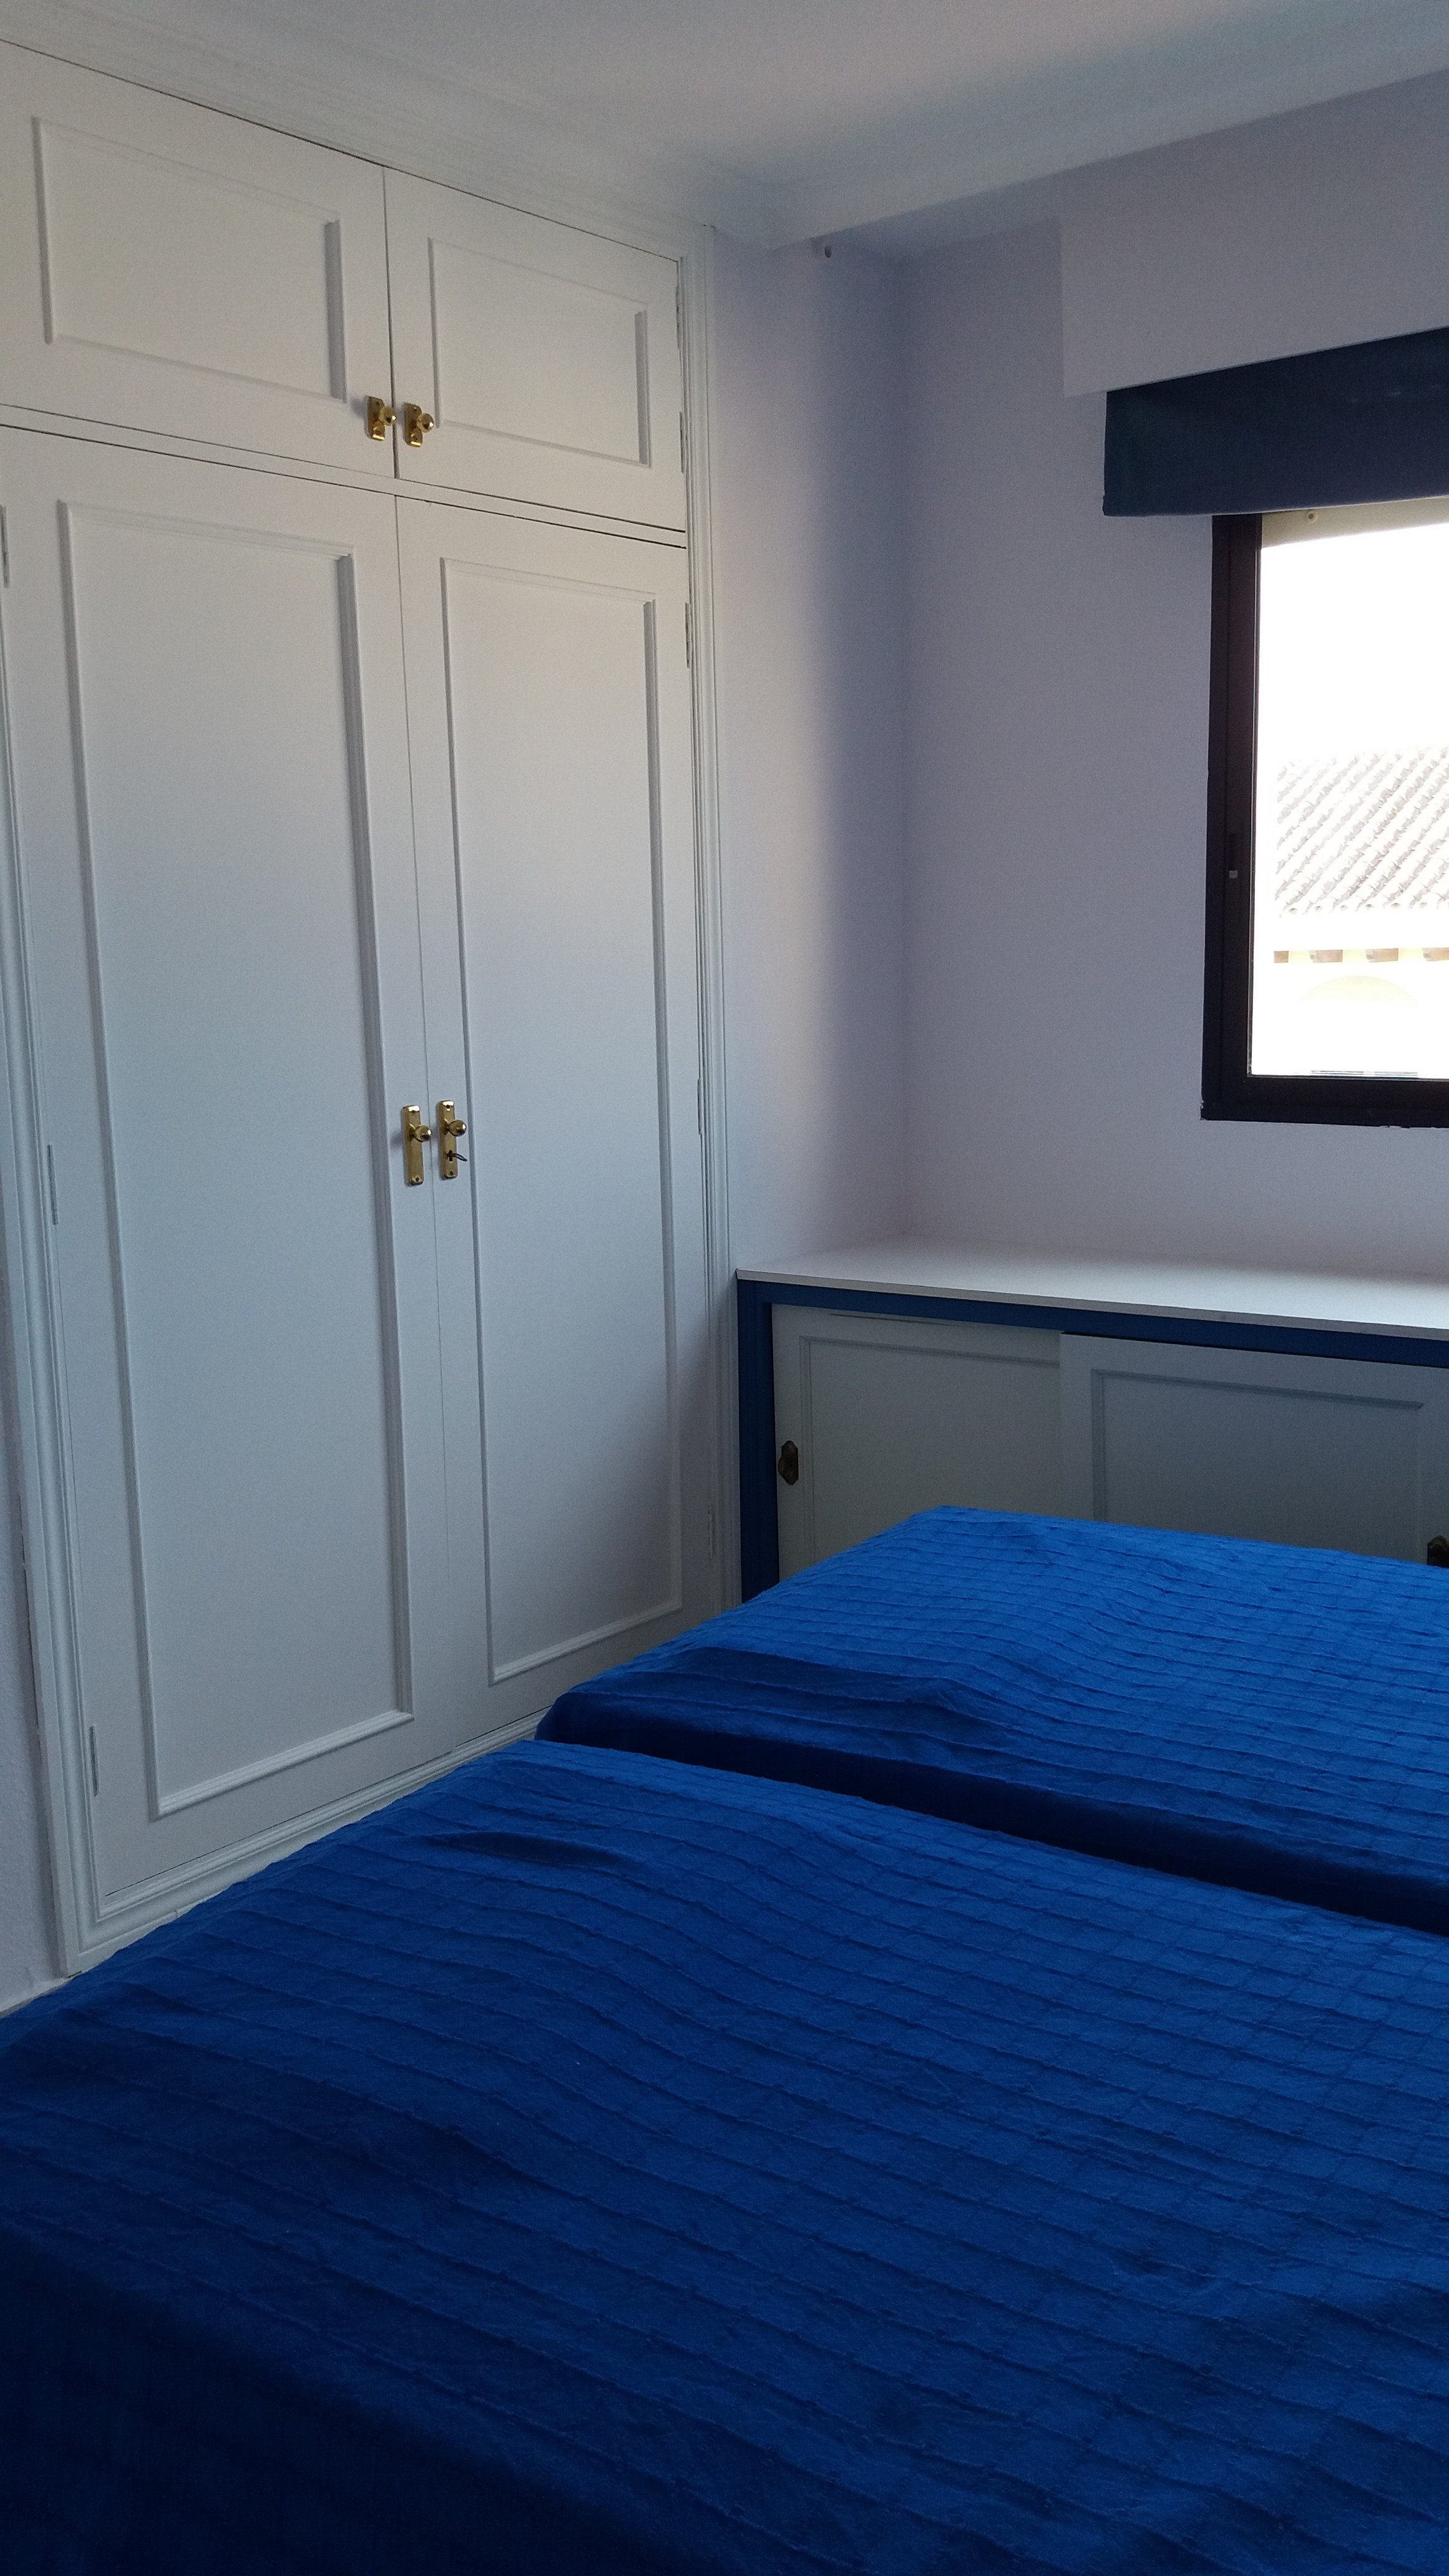 Se alquila apartamento de 1 dormitorio en el puerto de Estepona, vistas al mar - mibgroup.es